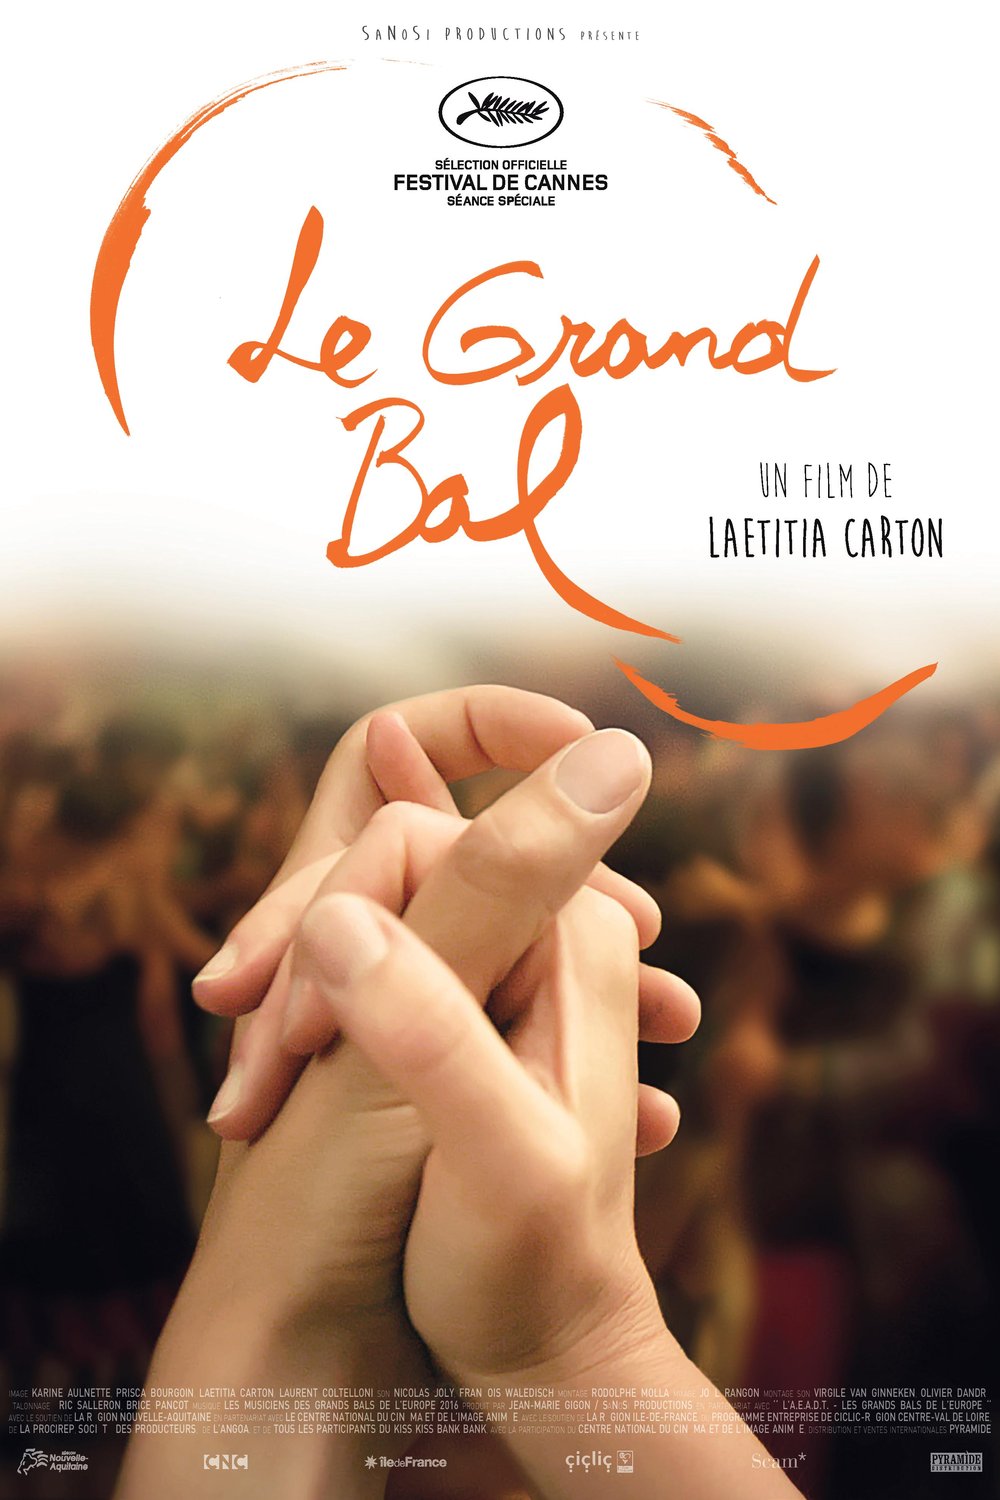 L'affiche du film Le Grand bal